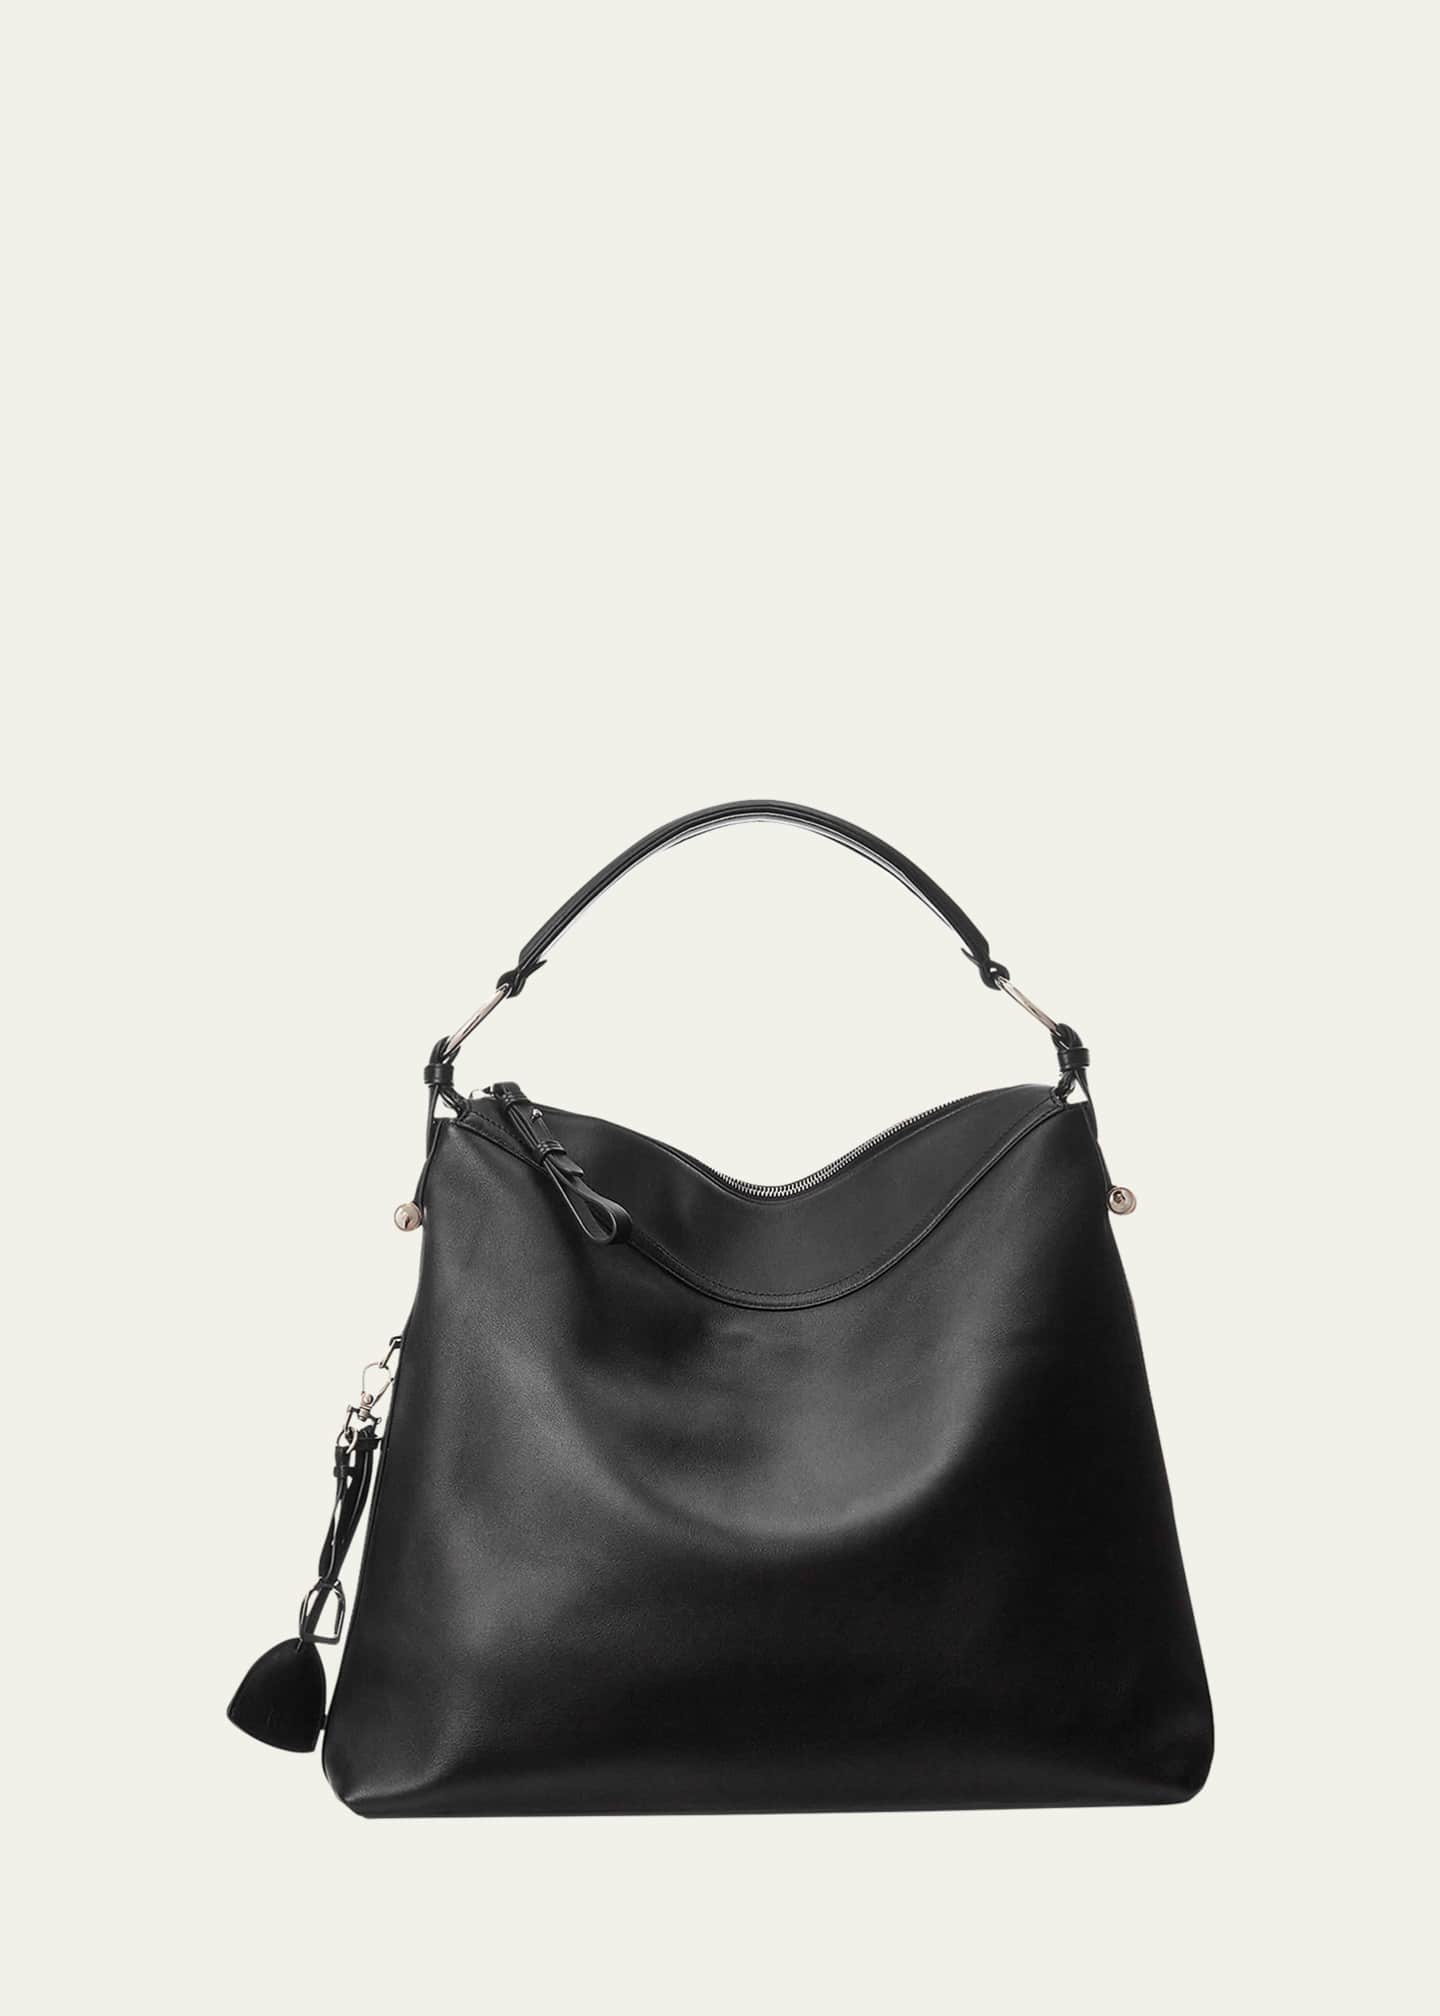 soft leather shoulder bag